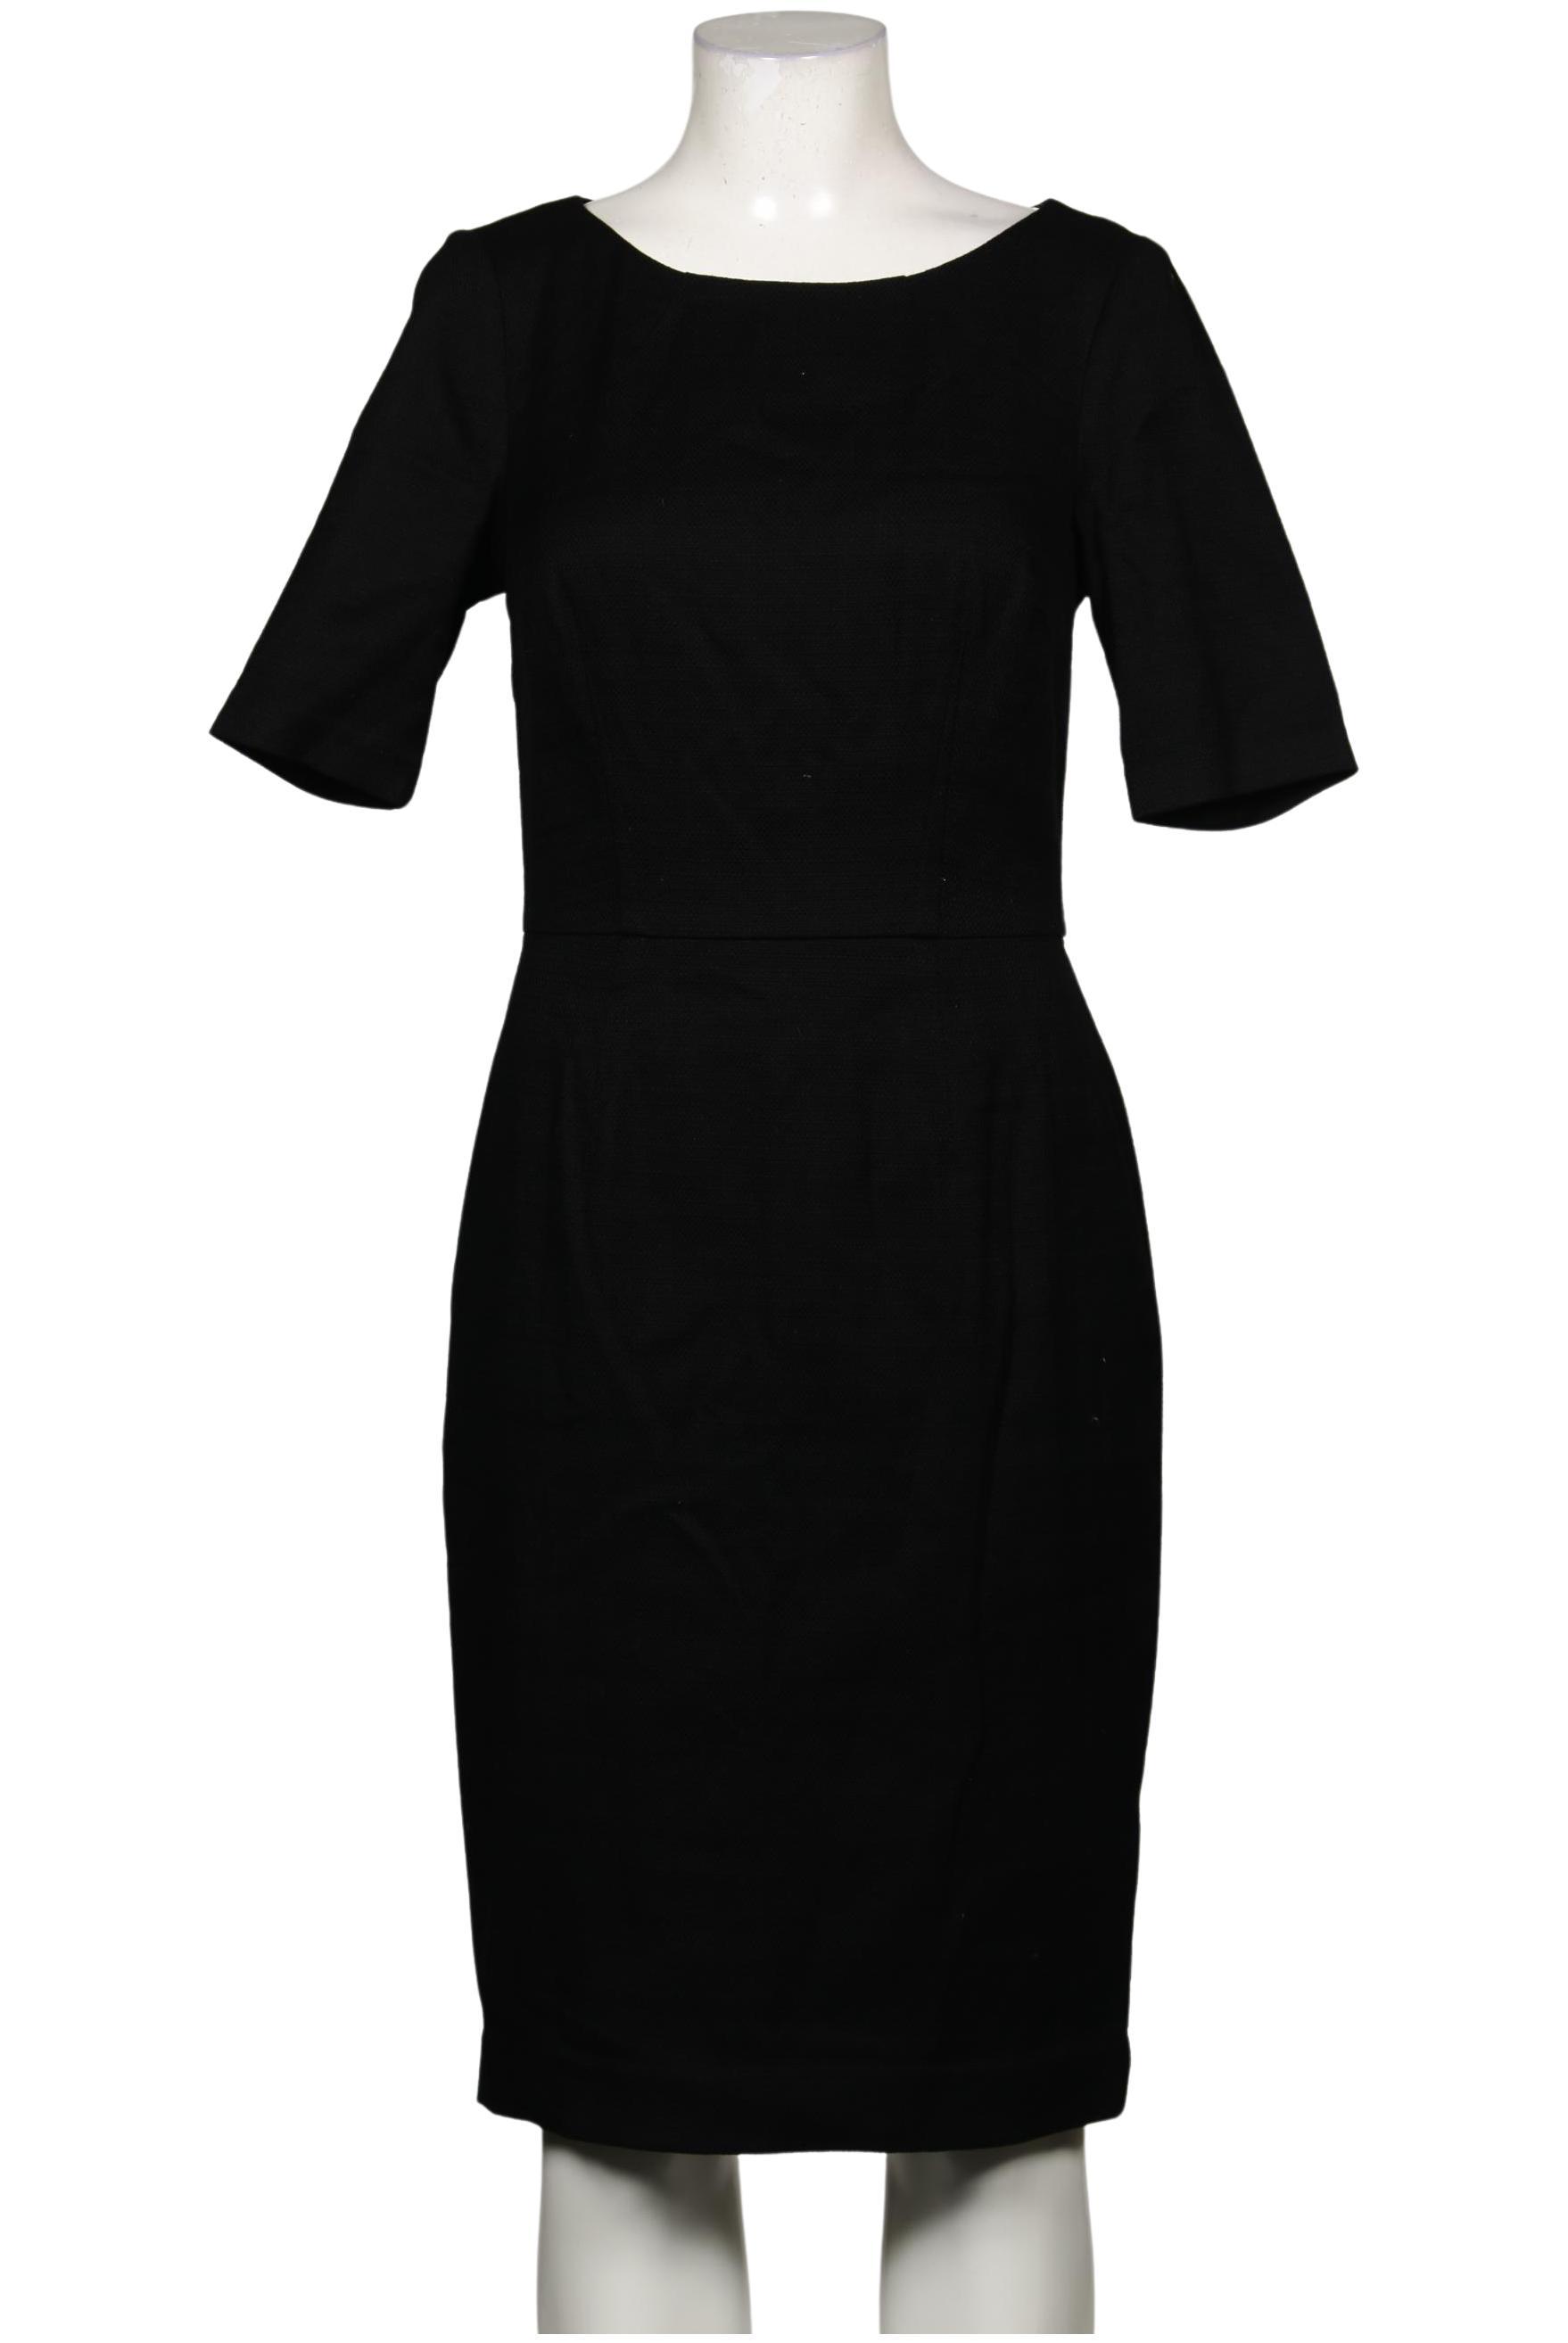 Boden Damen Kleid, schwarz, Gr. 38 von Boden